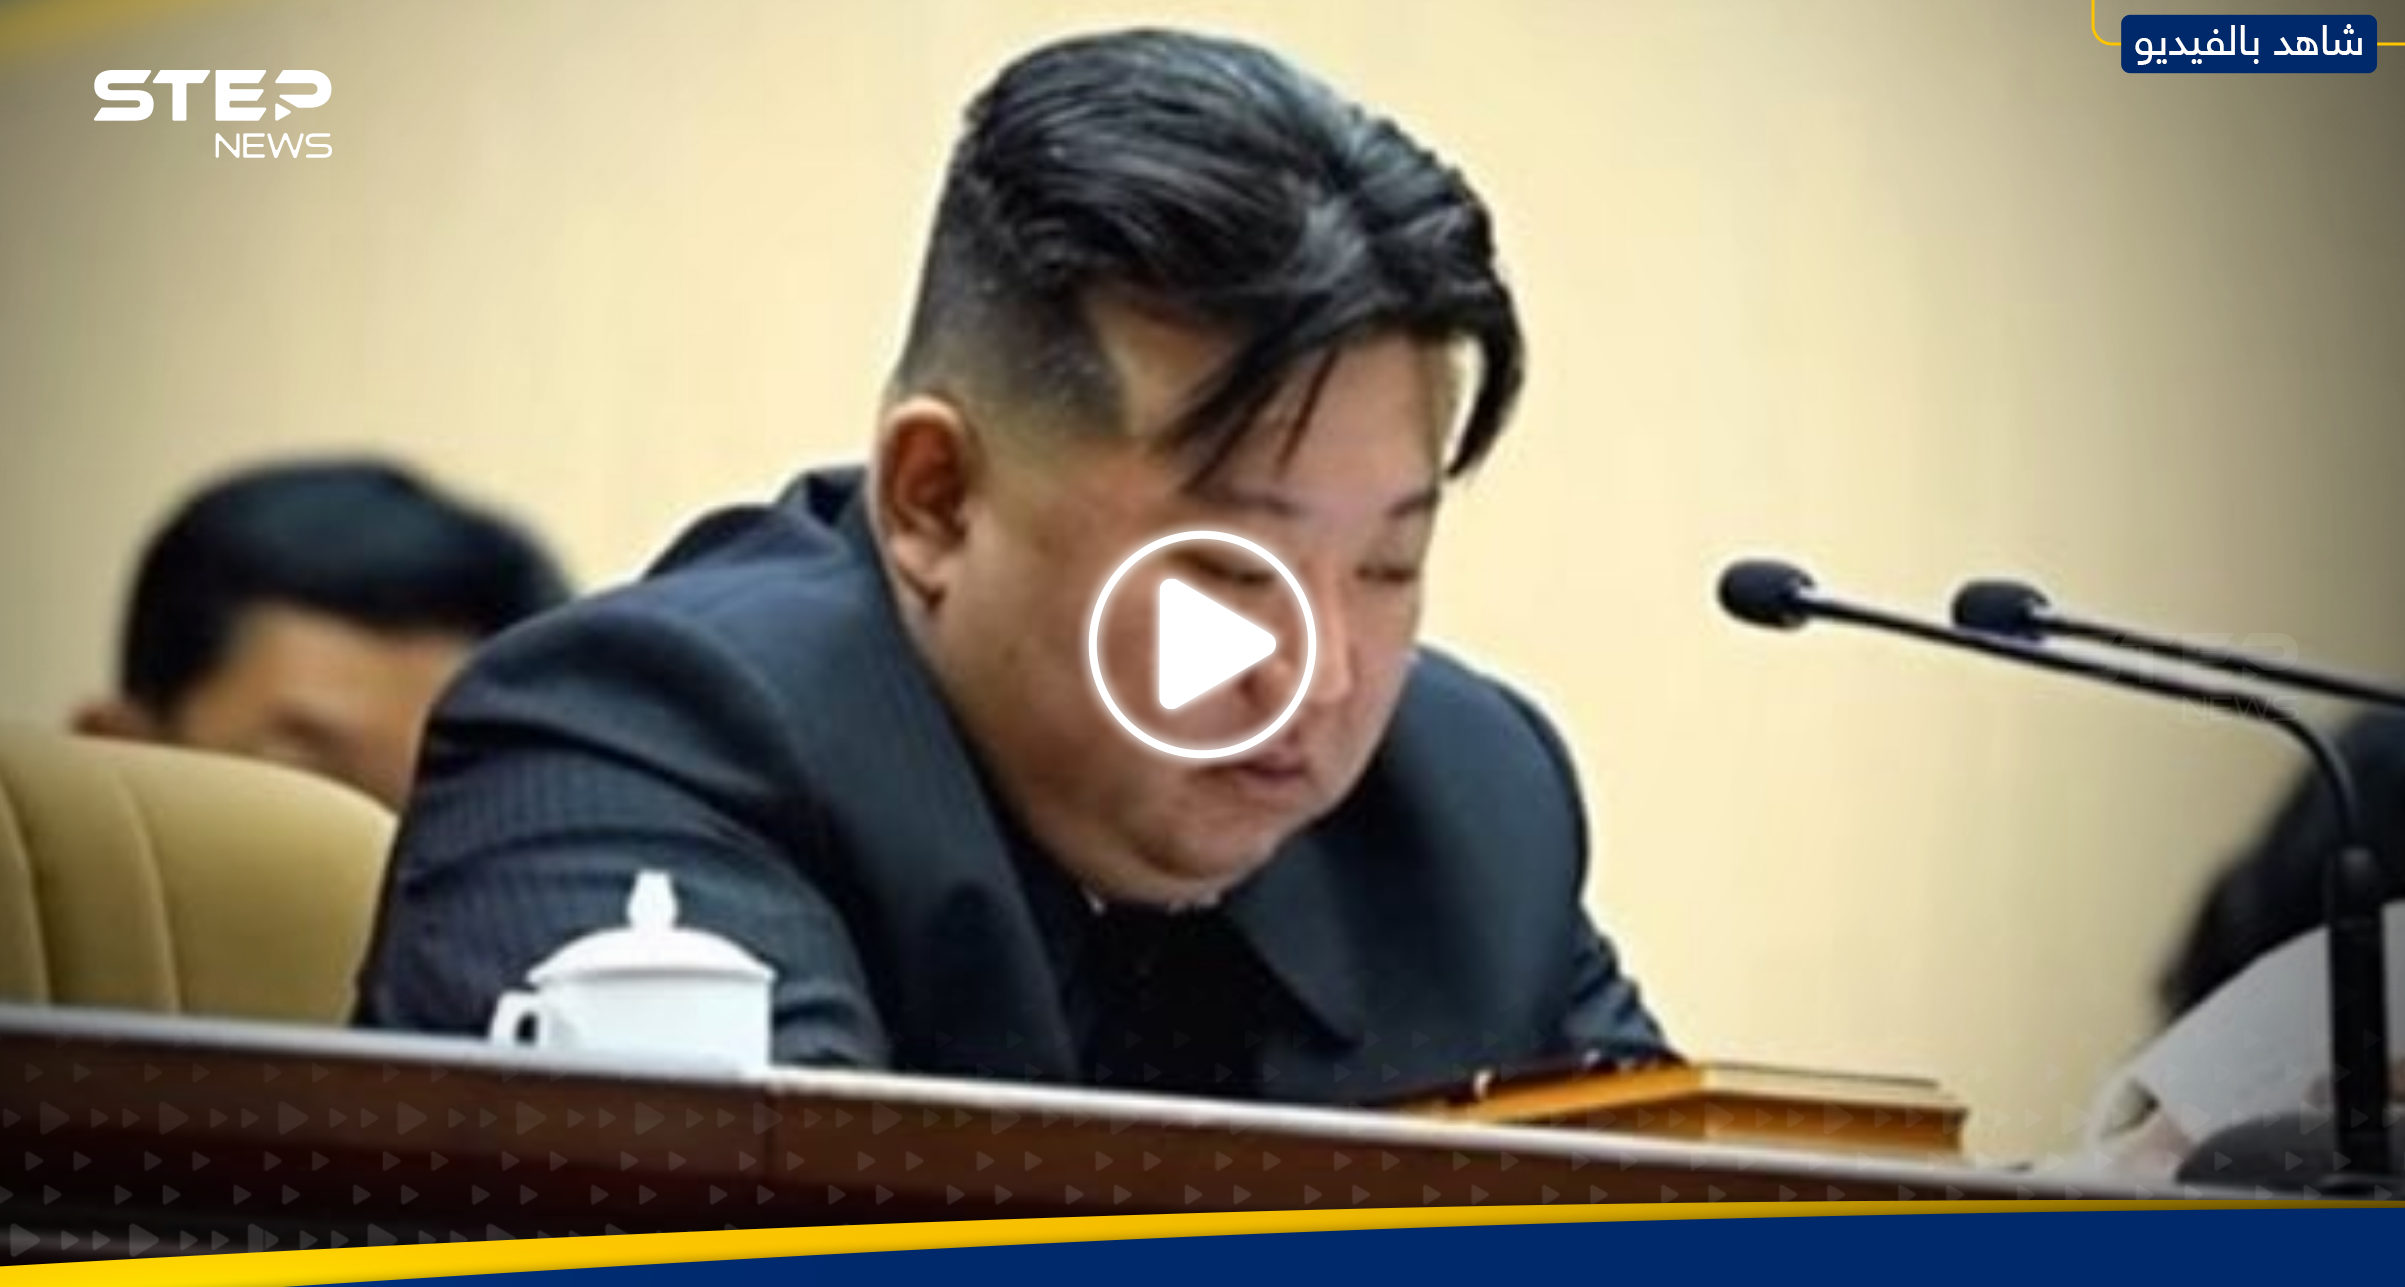 بالفيديو|| الزعيم الكوري يبكي متأثراً أمام حشد خلال سماعه تقرير.. ما القصة؟